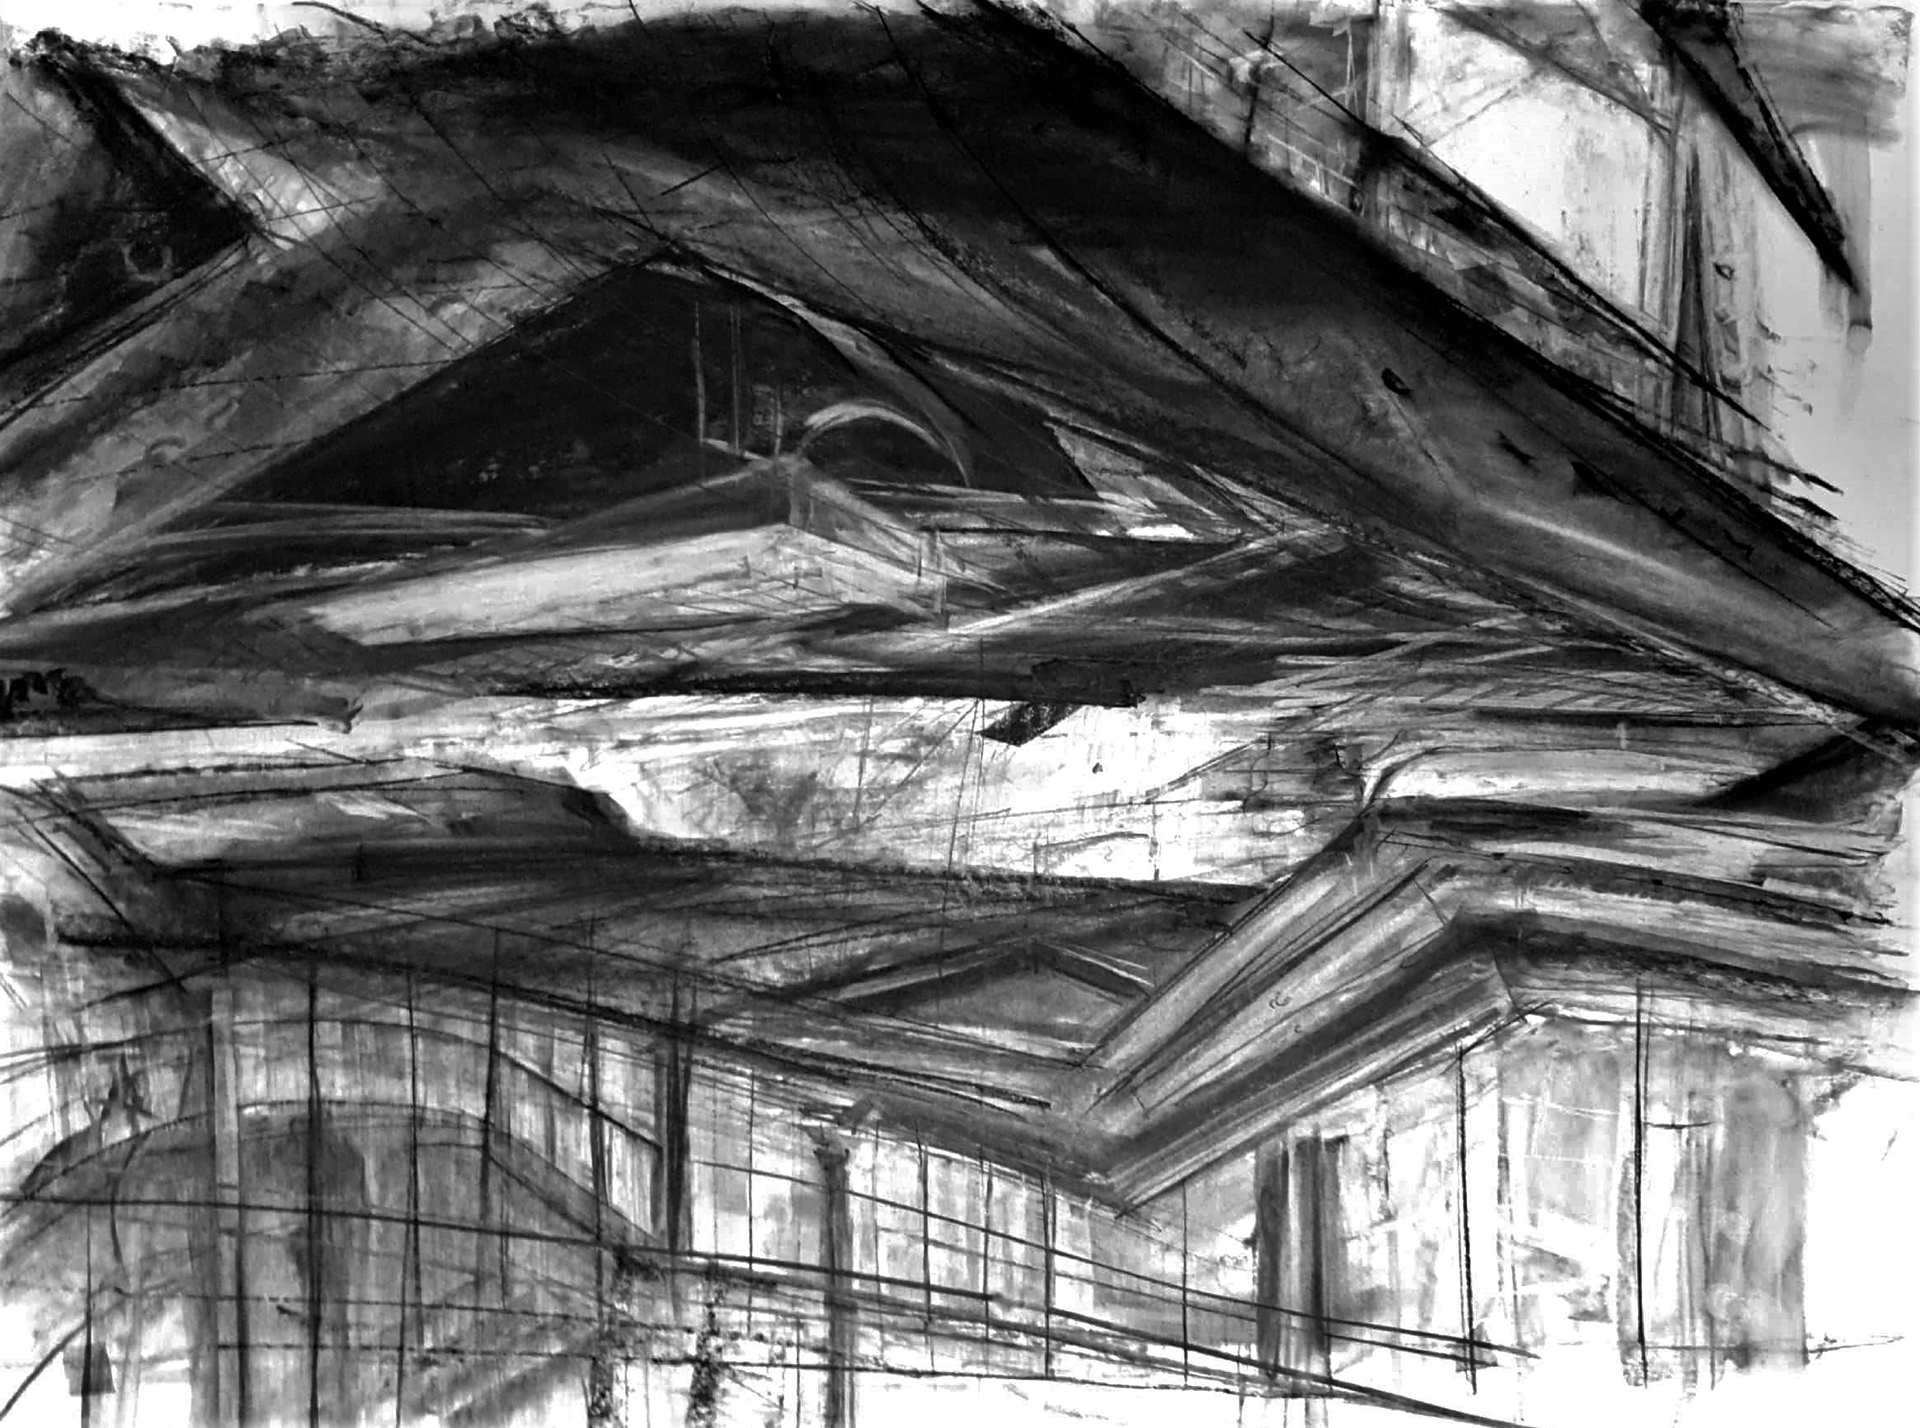 Zdjęcie przedstawiające ekspresyjne motywy architektoniczne wykonane czarnym węglem na papierze